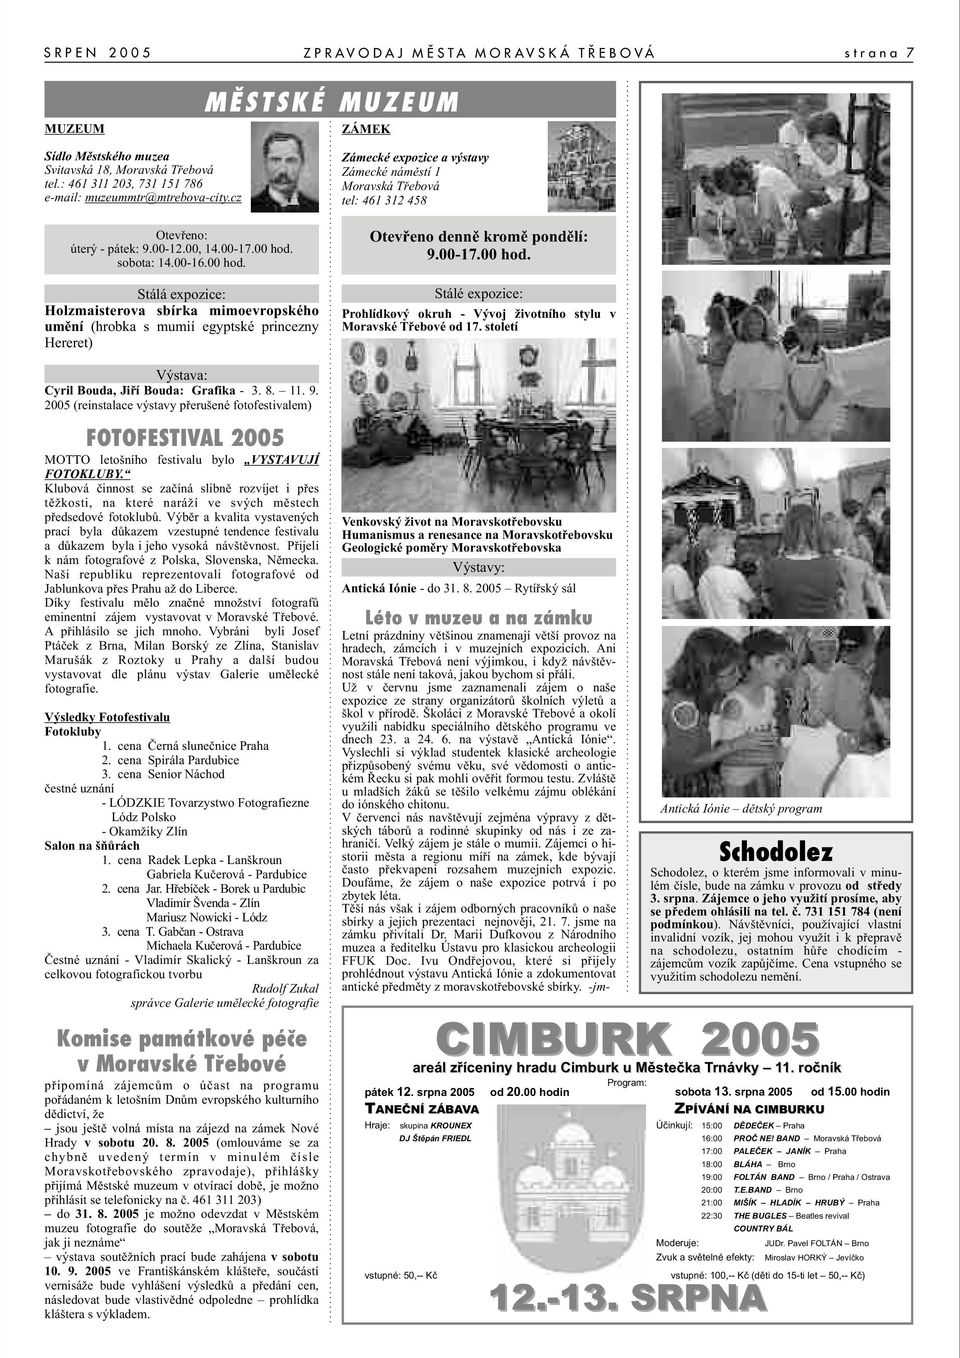 11. 9. 2005 (reinstalace výstavy pøerušené fotofestivalem) FOTOFESTIVAL 2005 MOTTO letošního festivalu bylo VYSTAVUJÍ FOTOKLUBY.